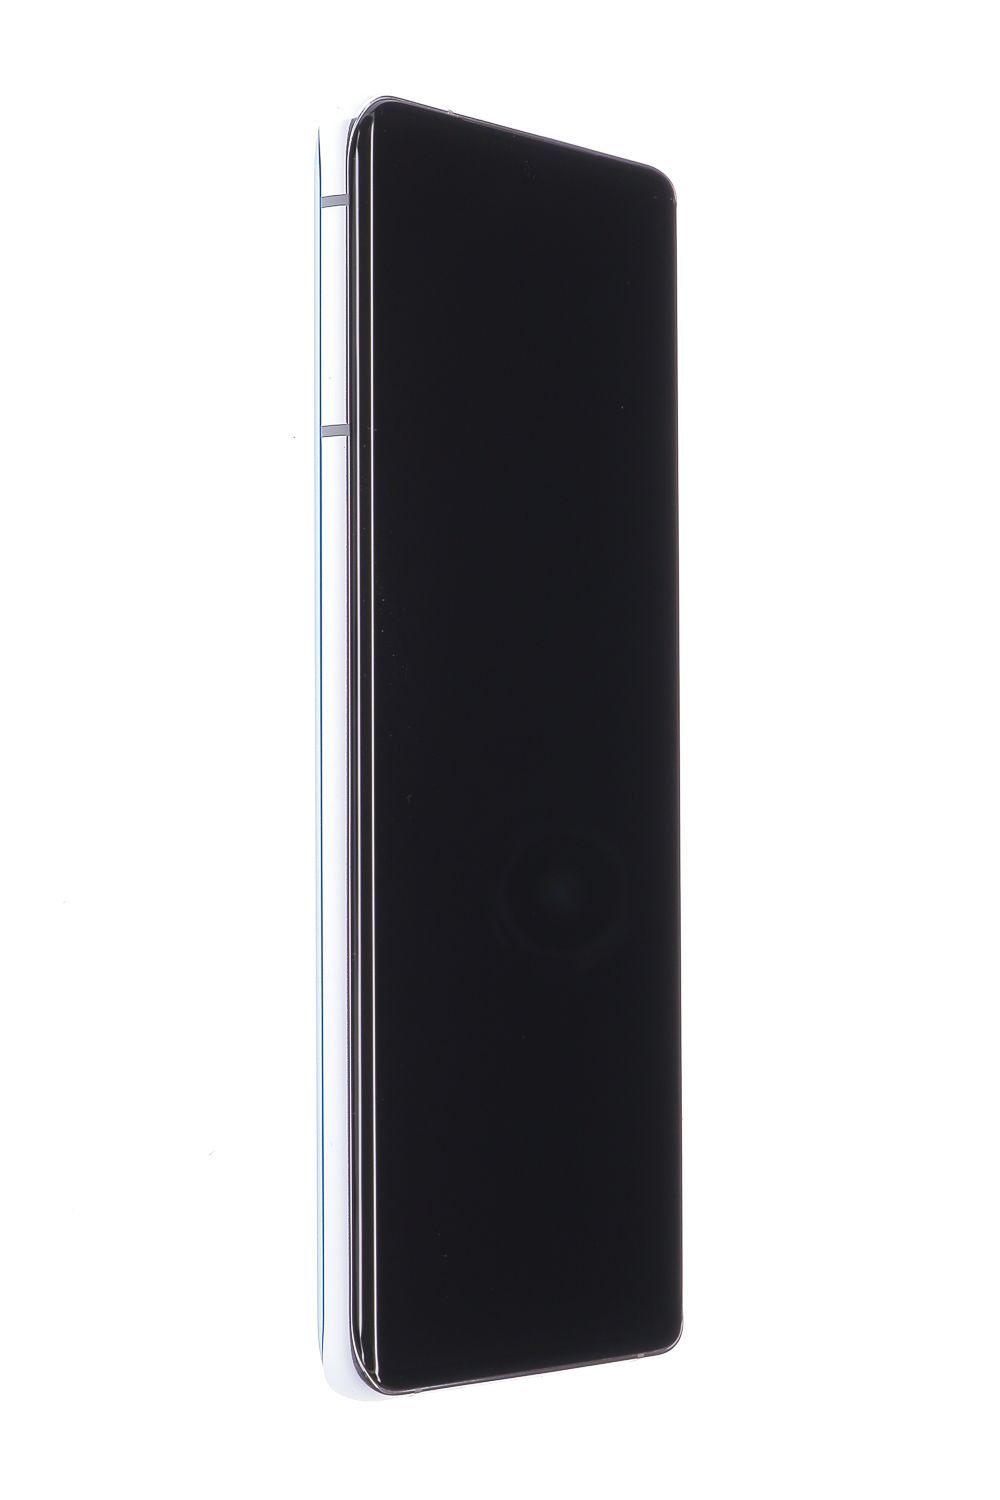 Mobiltelefon Samsung Galaxy S21 Ultra 5G Dual Sim, Silver, 256 GB, Foarte Bun